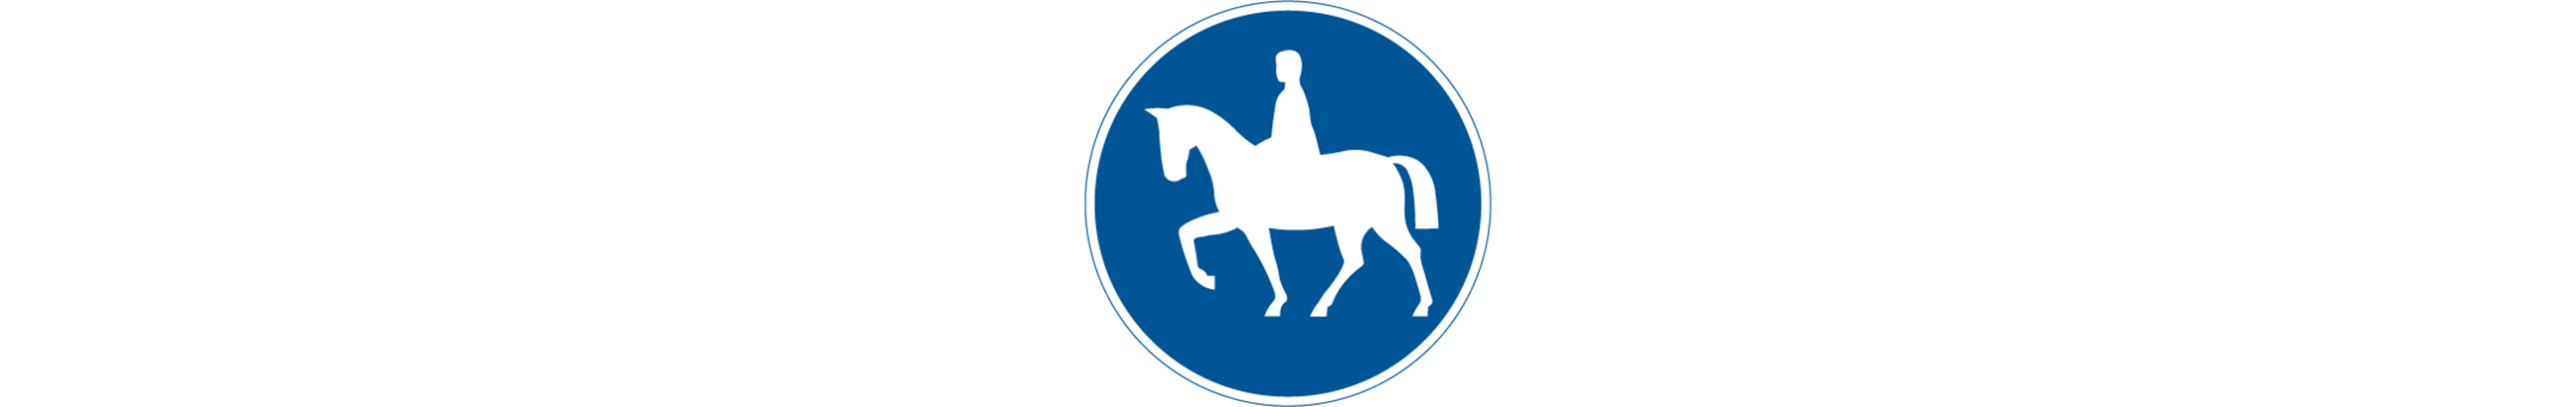 vägmärke för ridväg